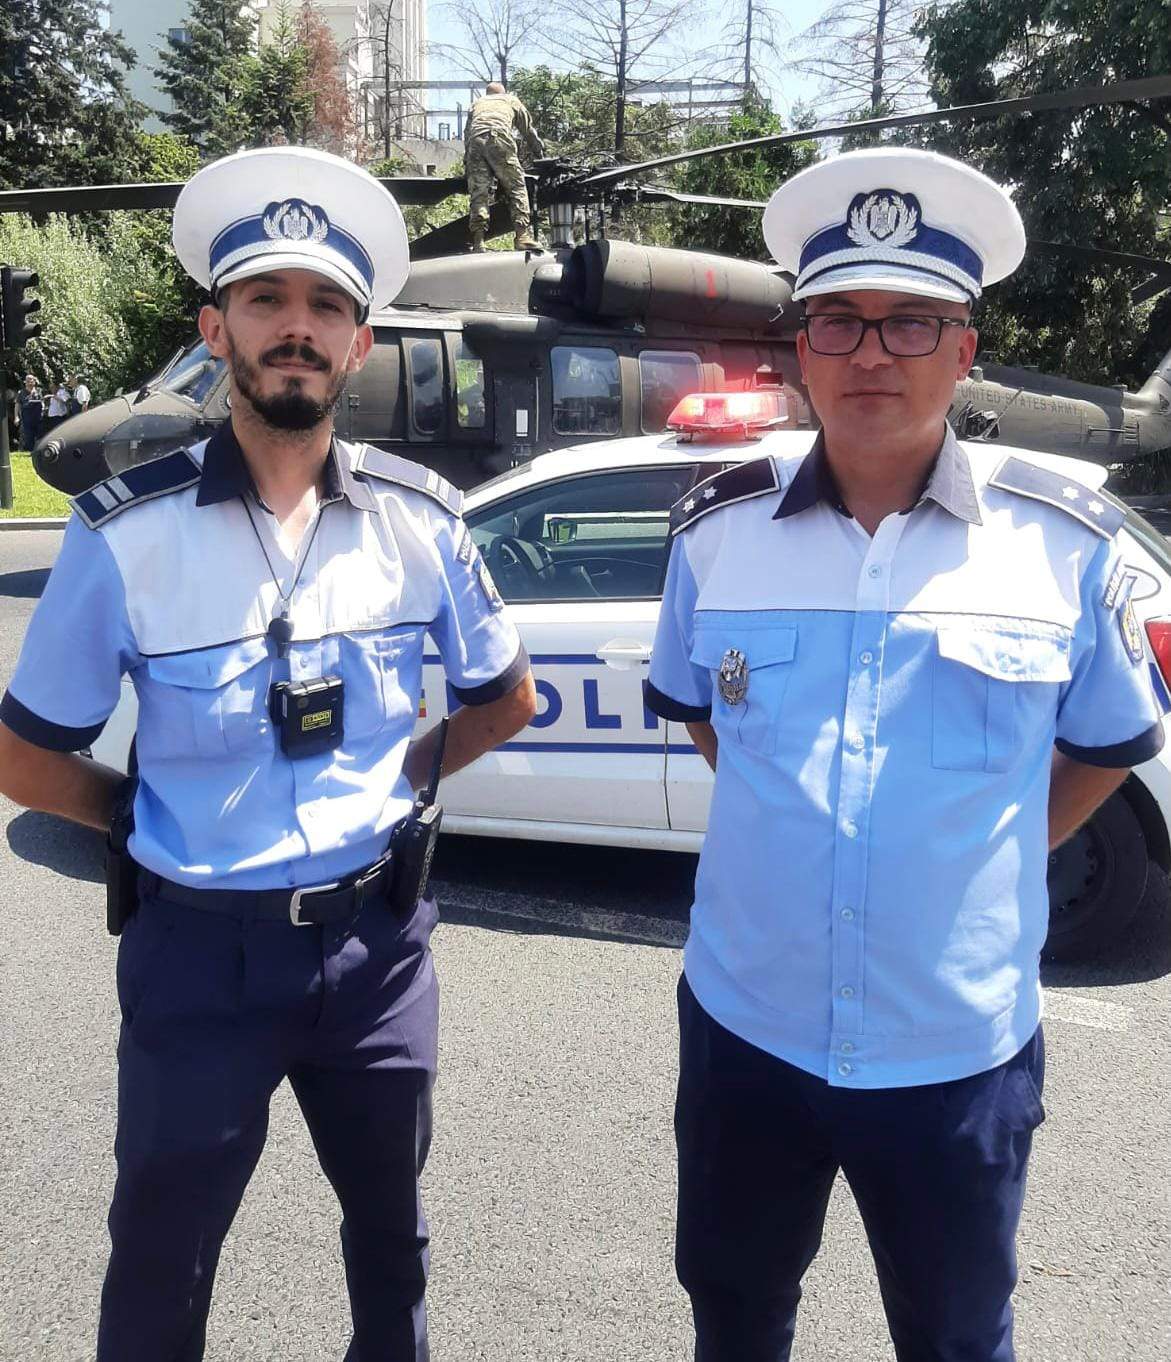 Ei sunt polițiștii care au împiedicat producerea unei tragedii la aterizarea elicopterului în București: „Fugi repede și blochează traficul!”